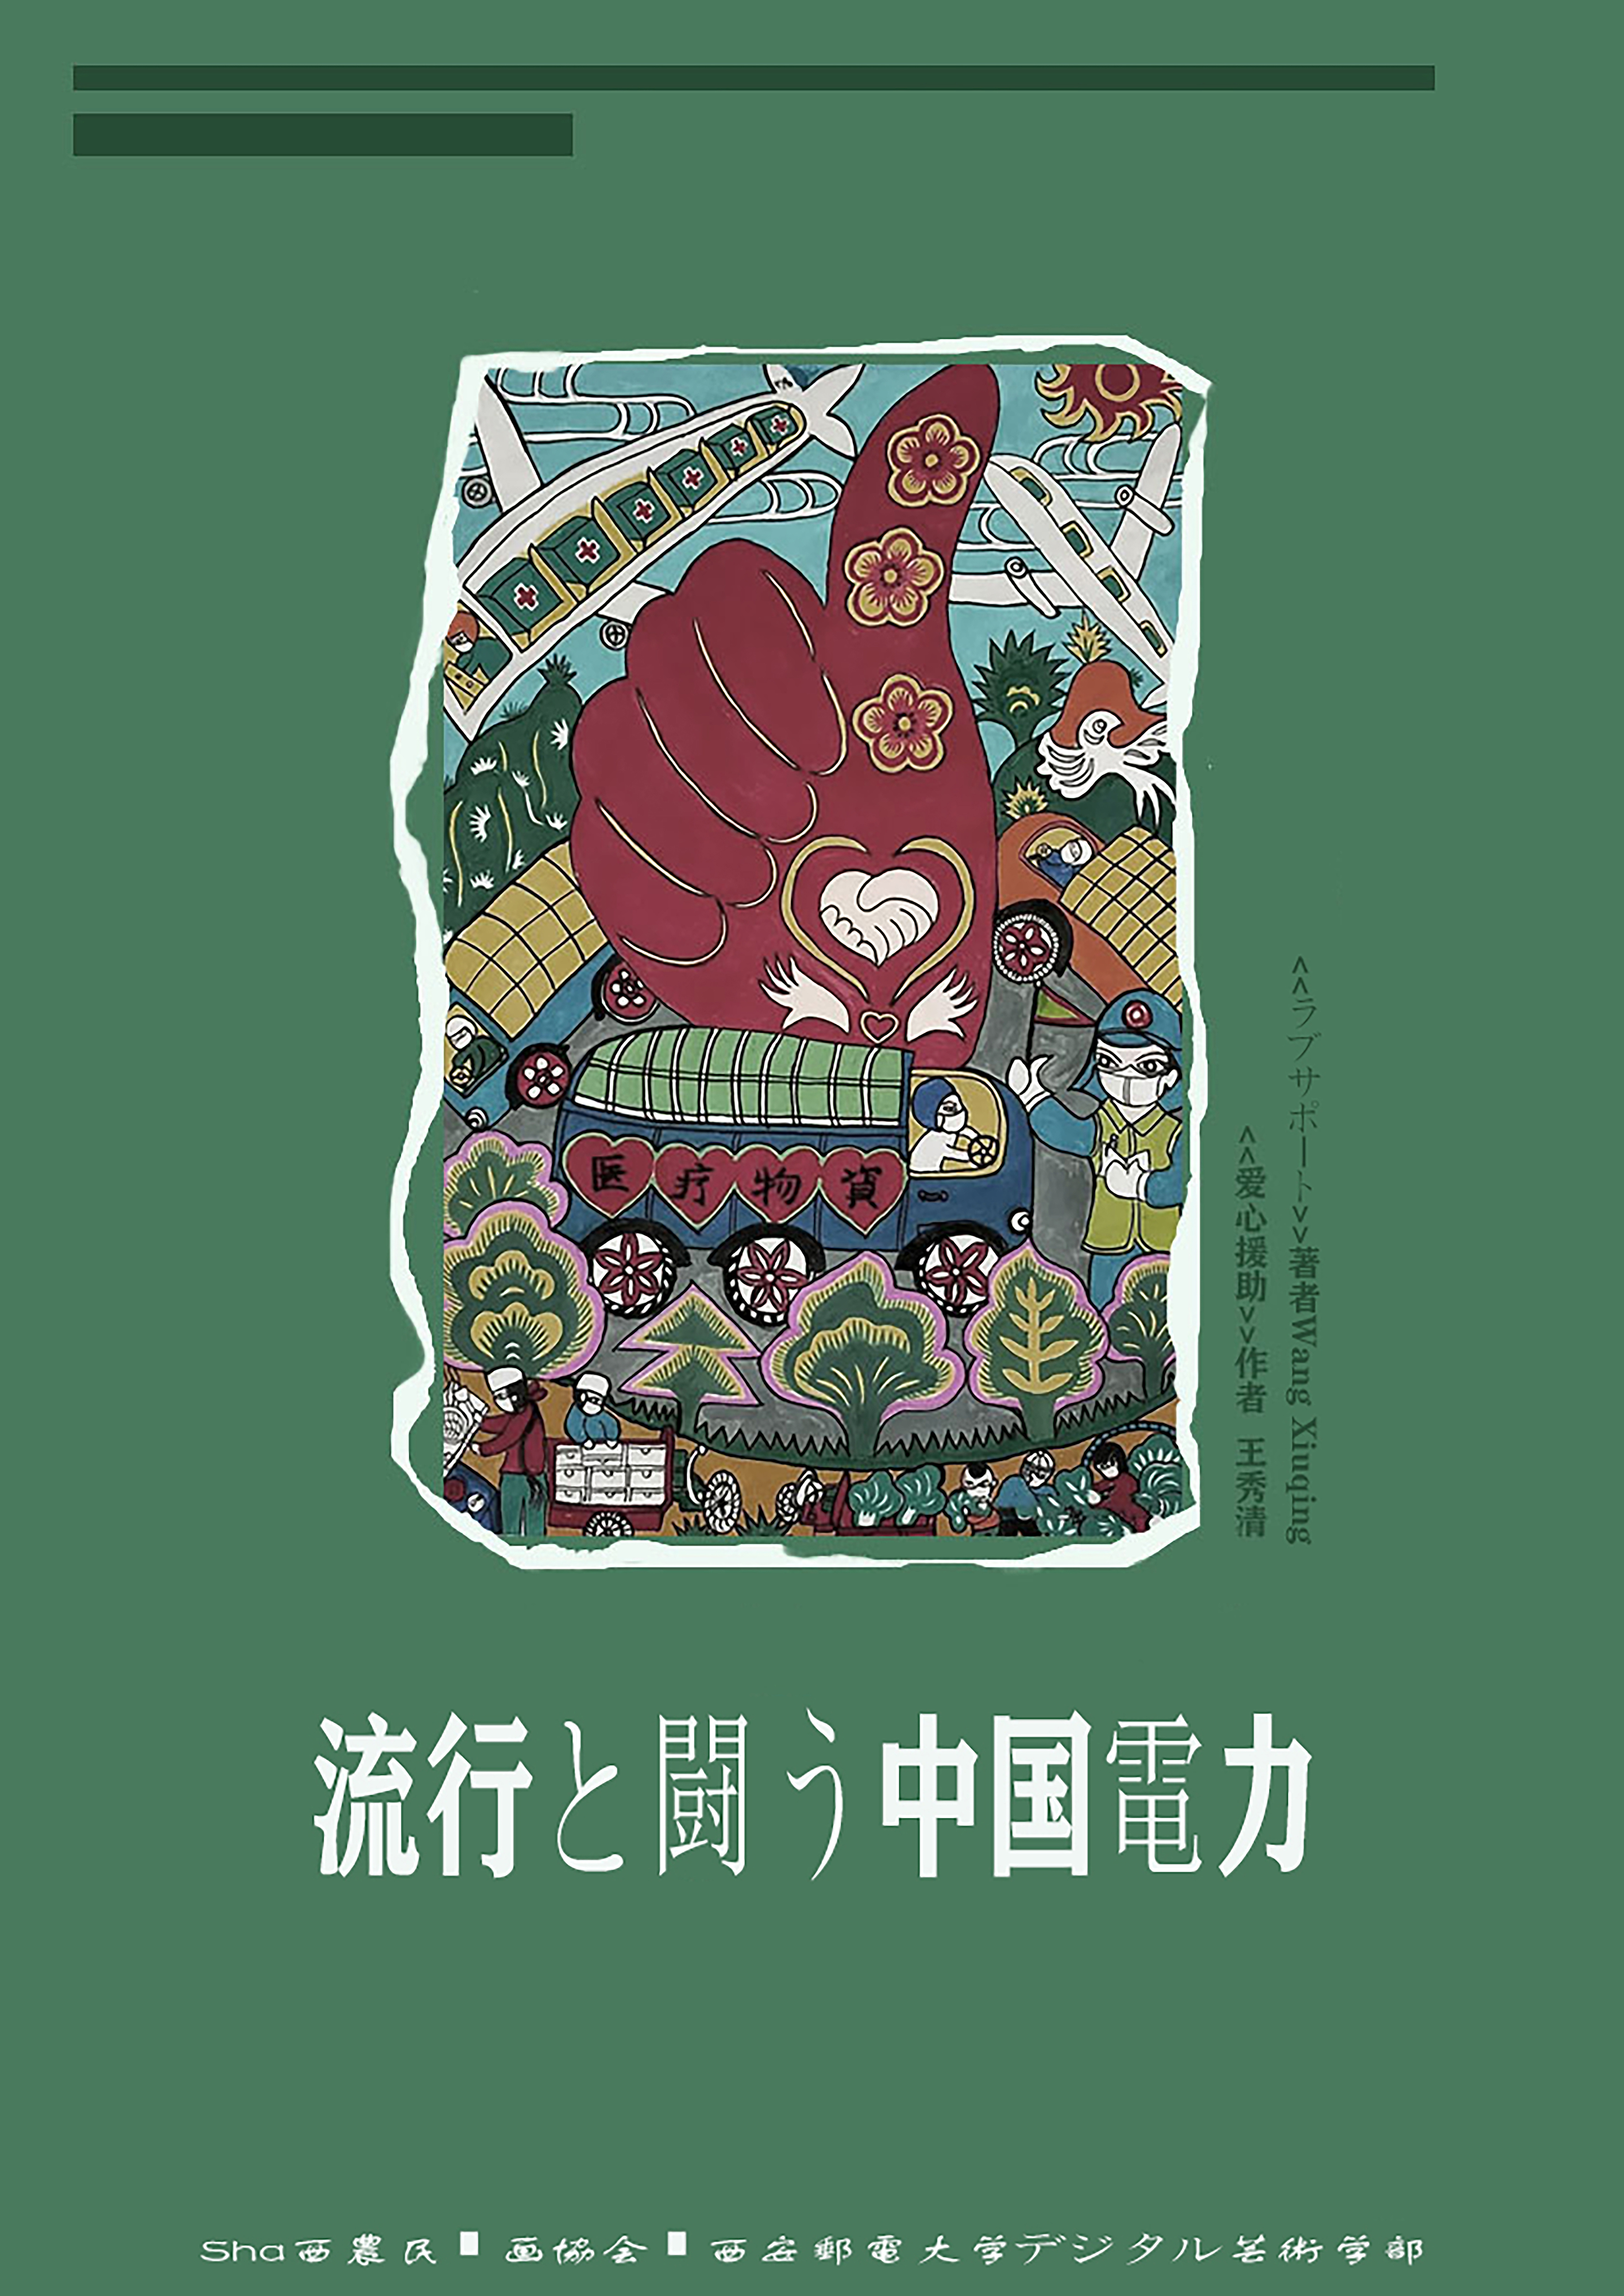 陕西省农民画协会推出多语种农民画作品 助力全球抗疫